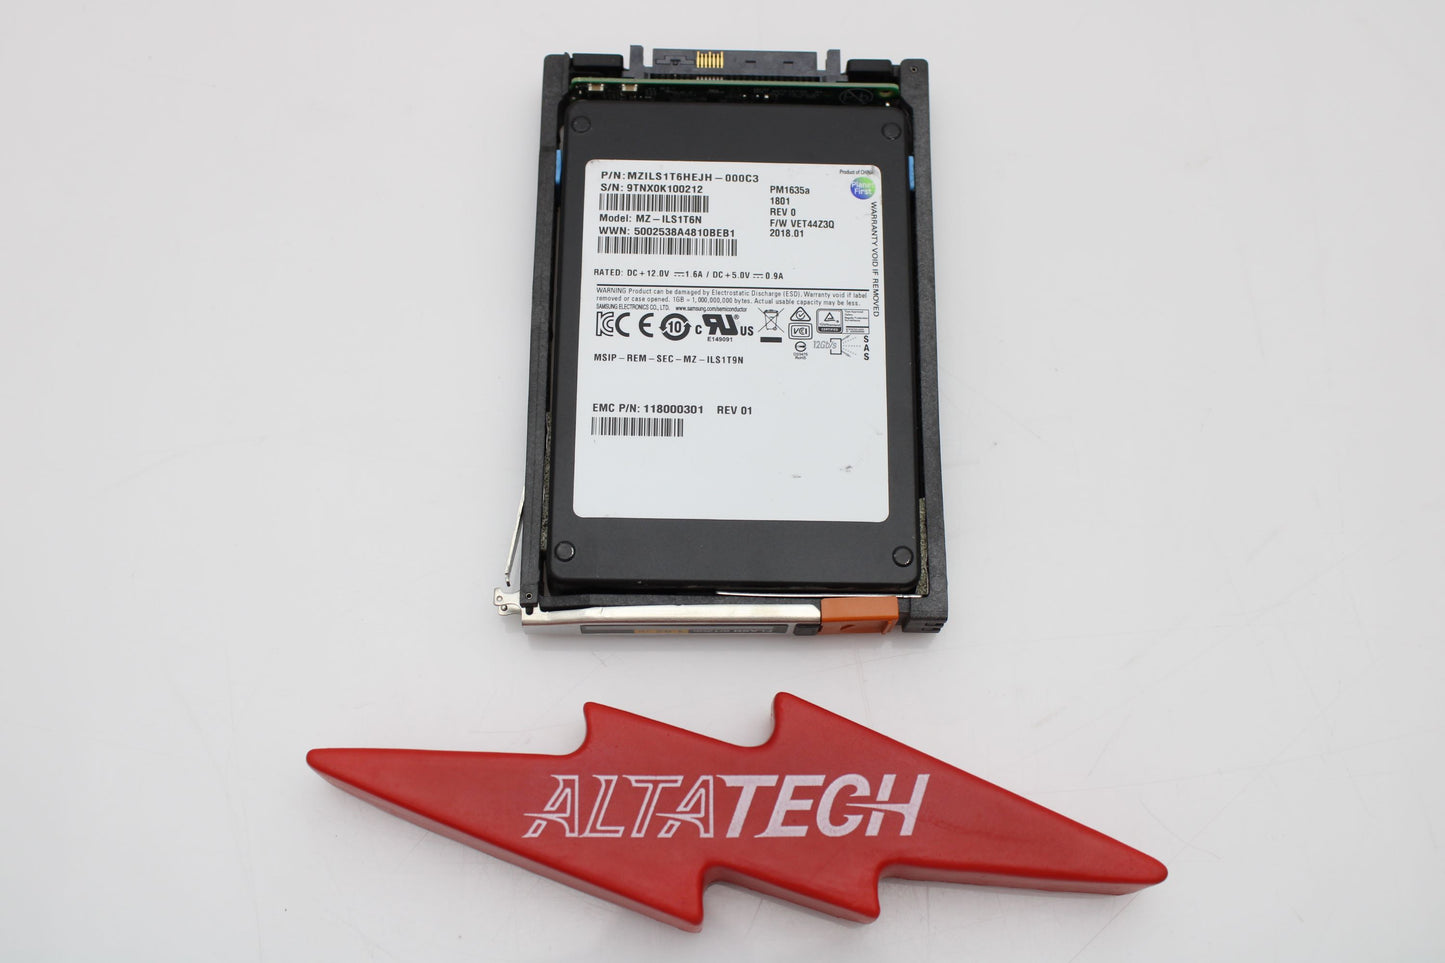 EMC 005052522 1.92TB SSD SAS 2.5 12G, Used